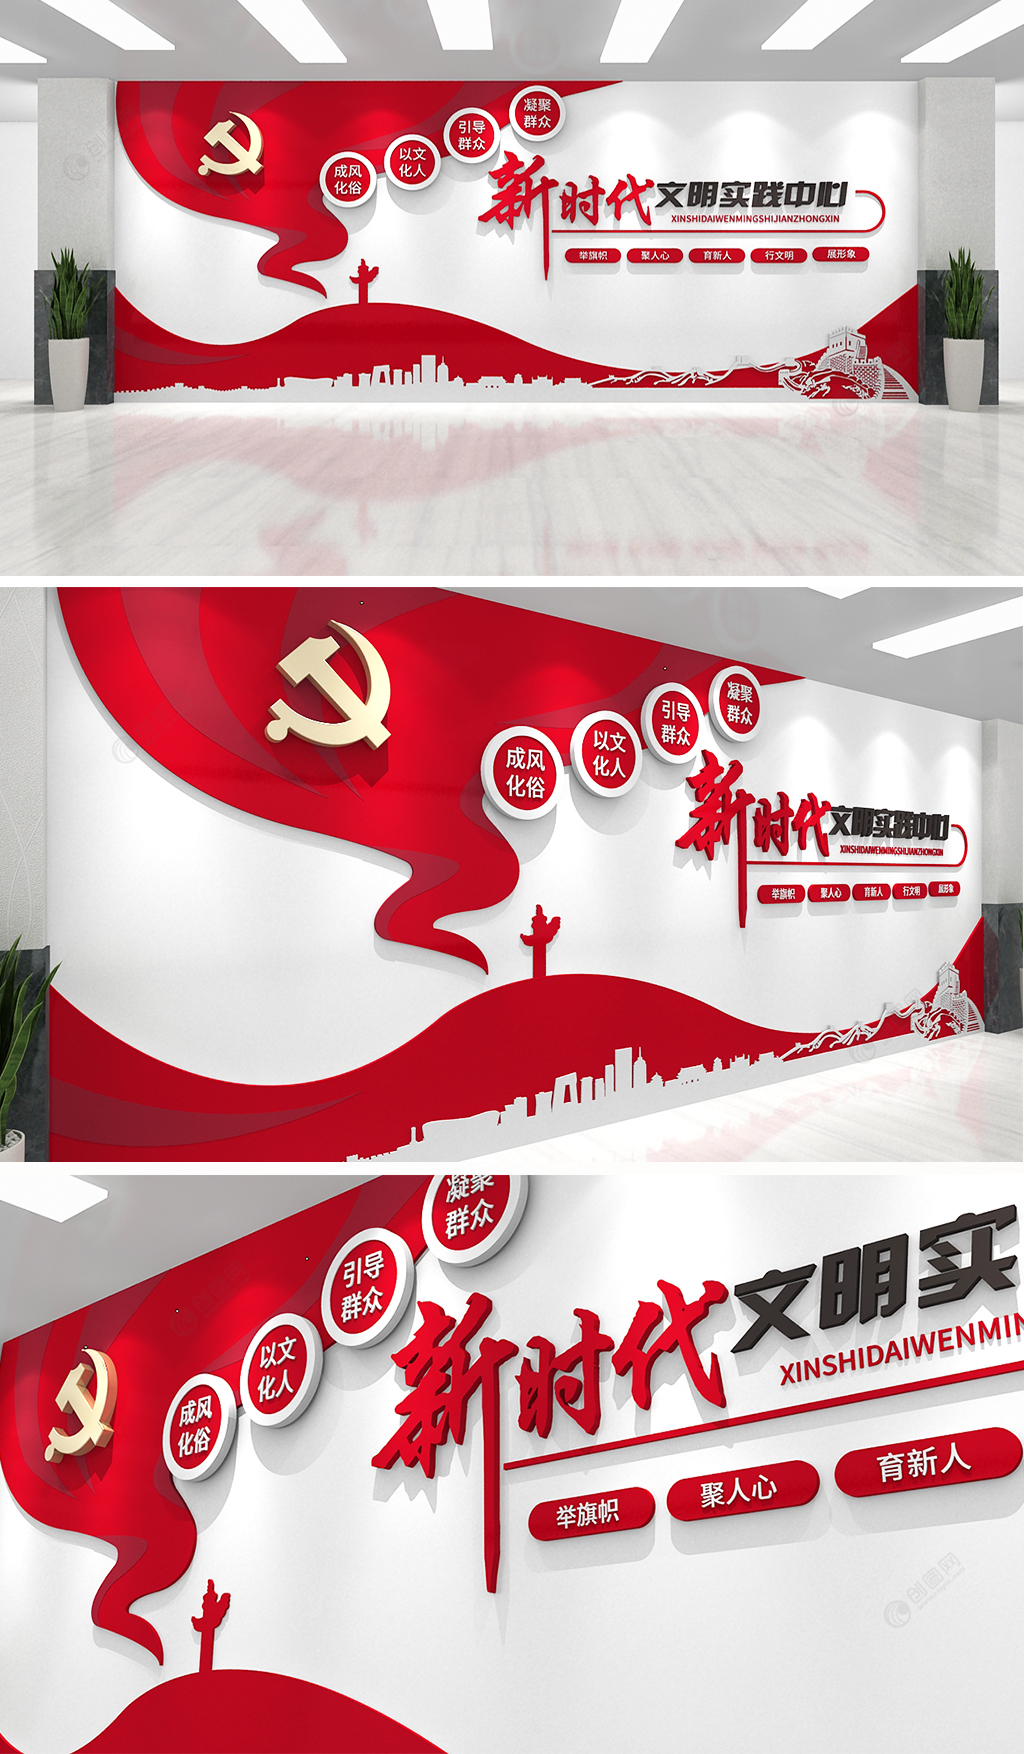 红色飘逸飘带新时代文明实践中心站党建文化墙效果图